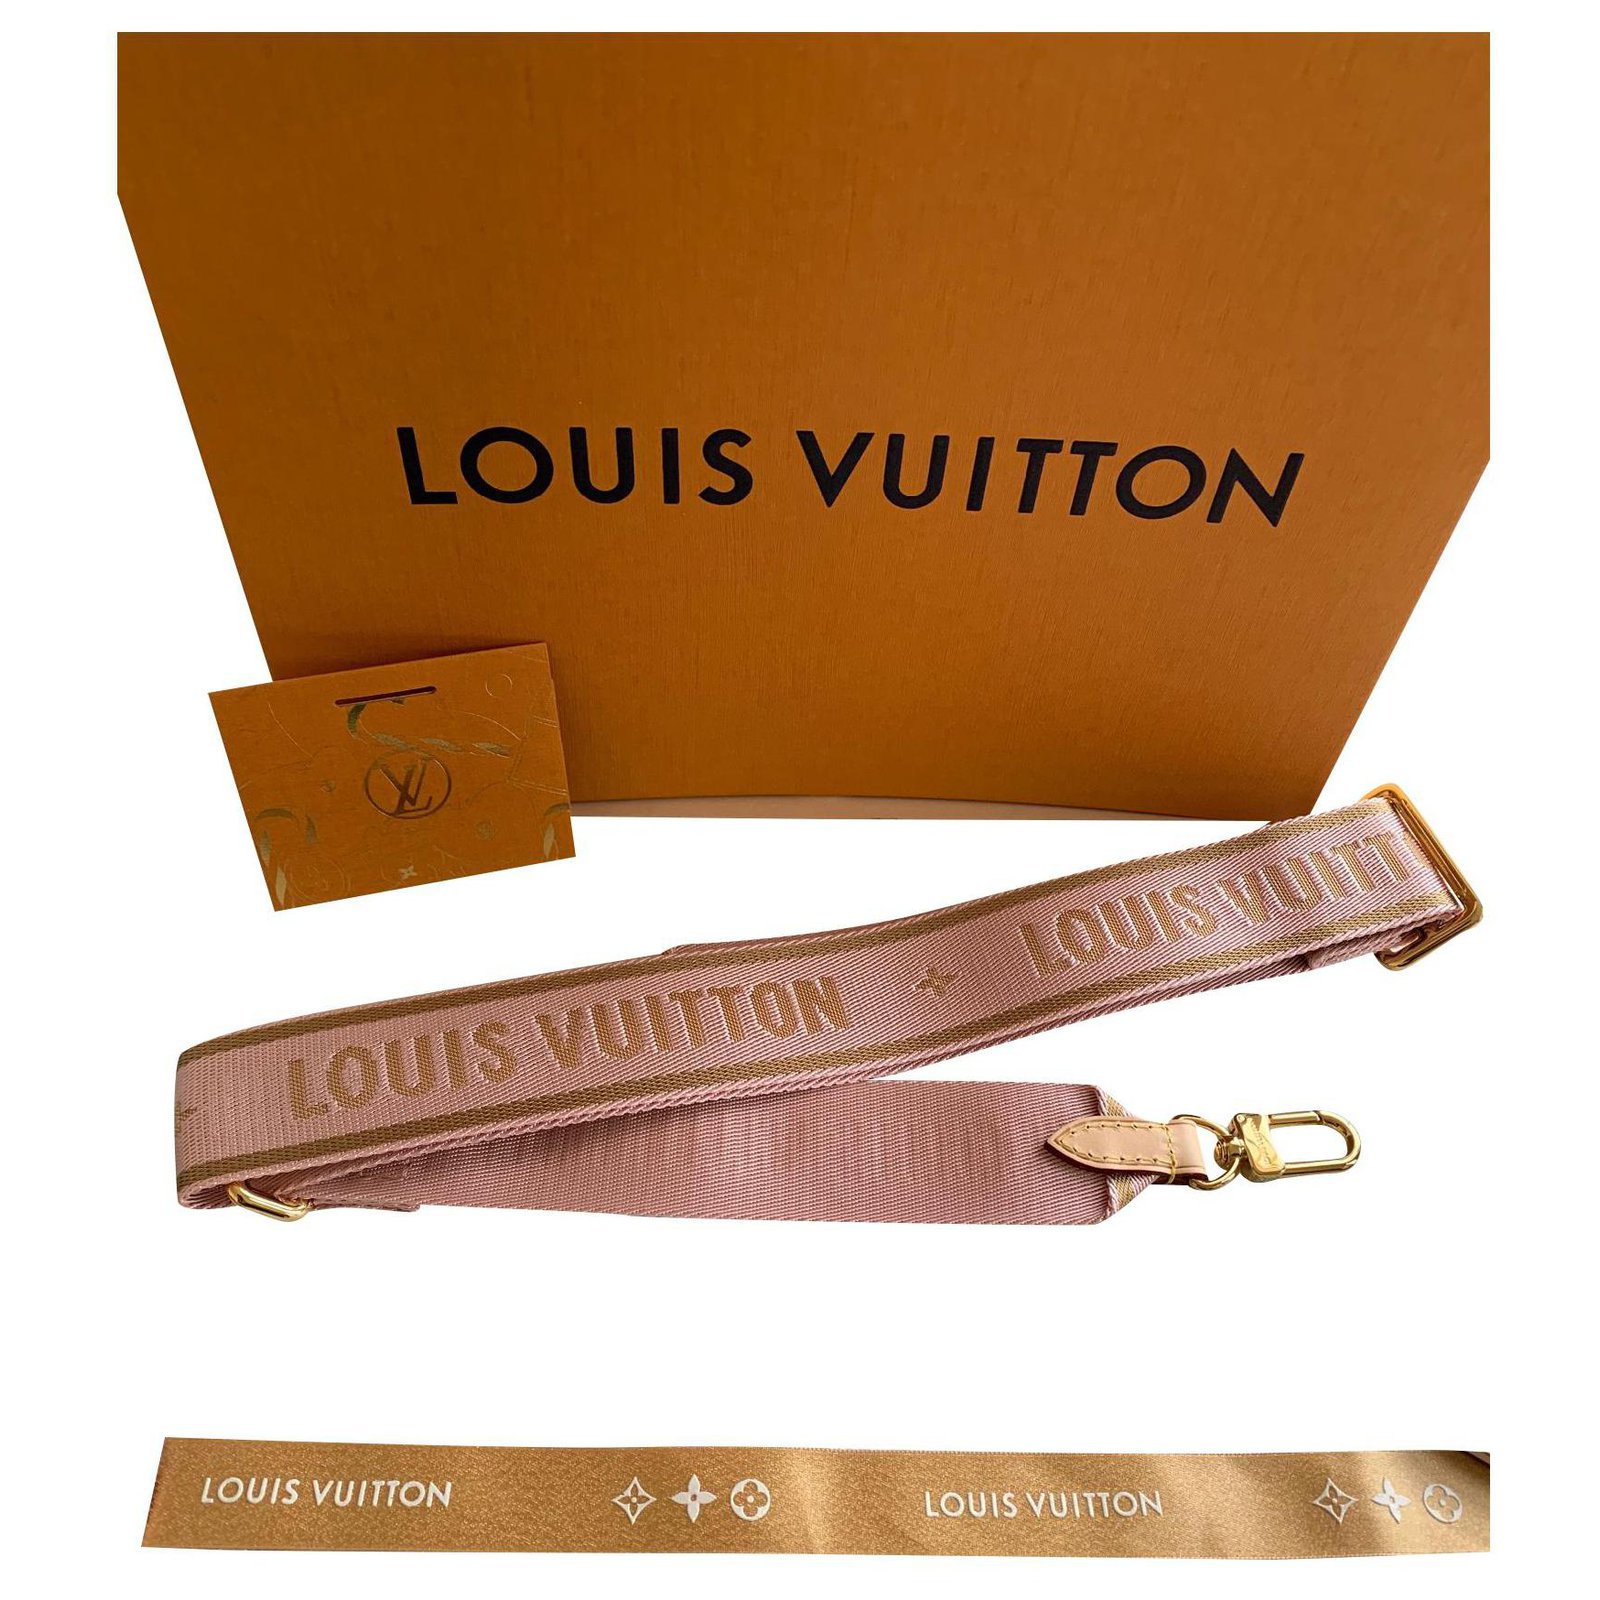 Louis Vuitton, Accessories, Authentic Louis Vuitton Guitar Strap